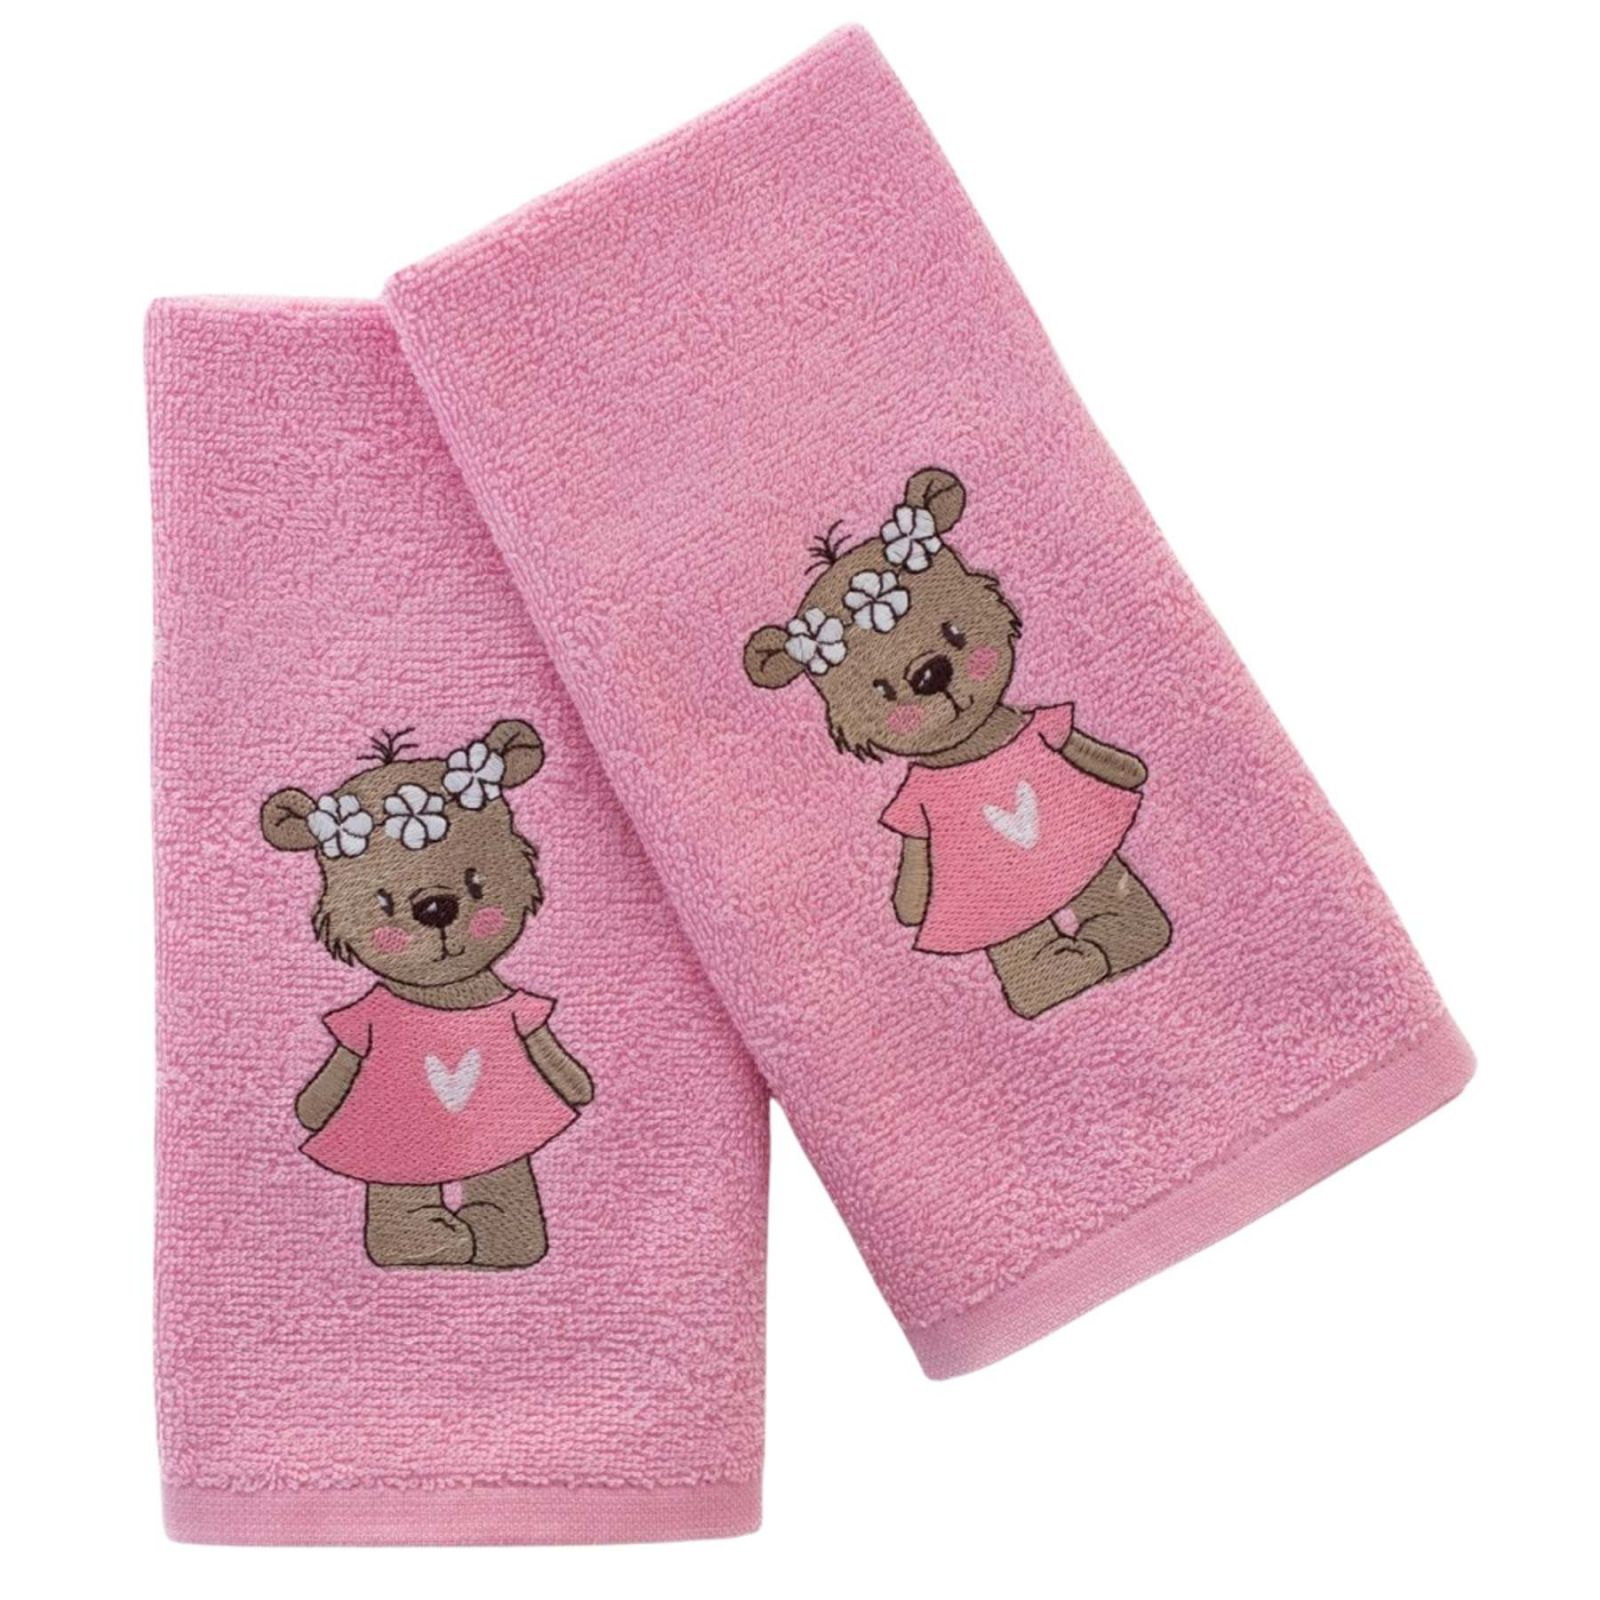 Dětský ručník LILI růžový Praktik